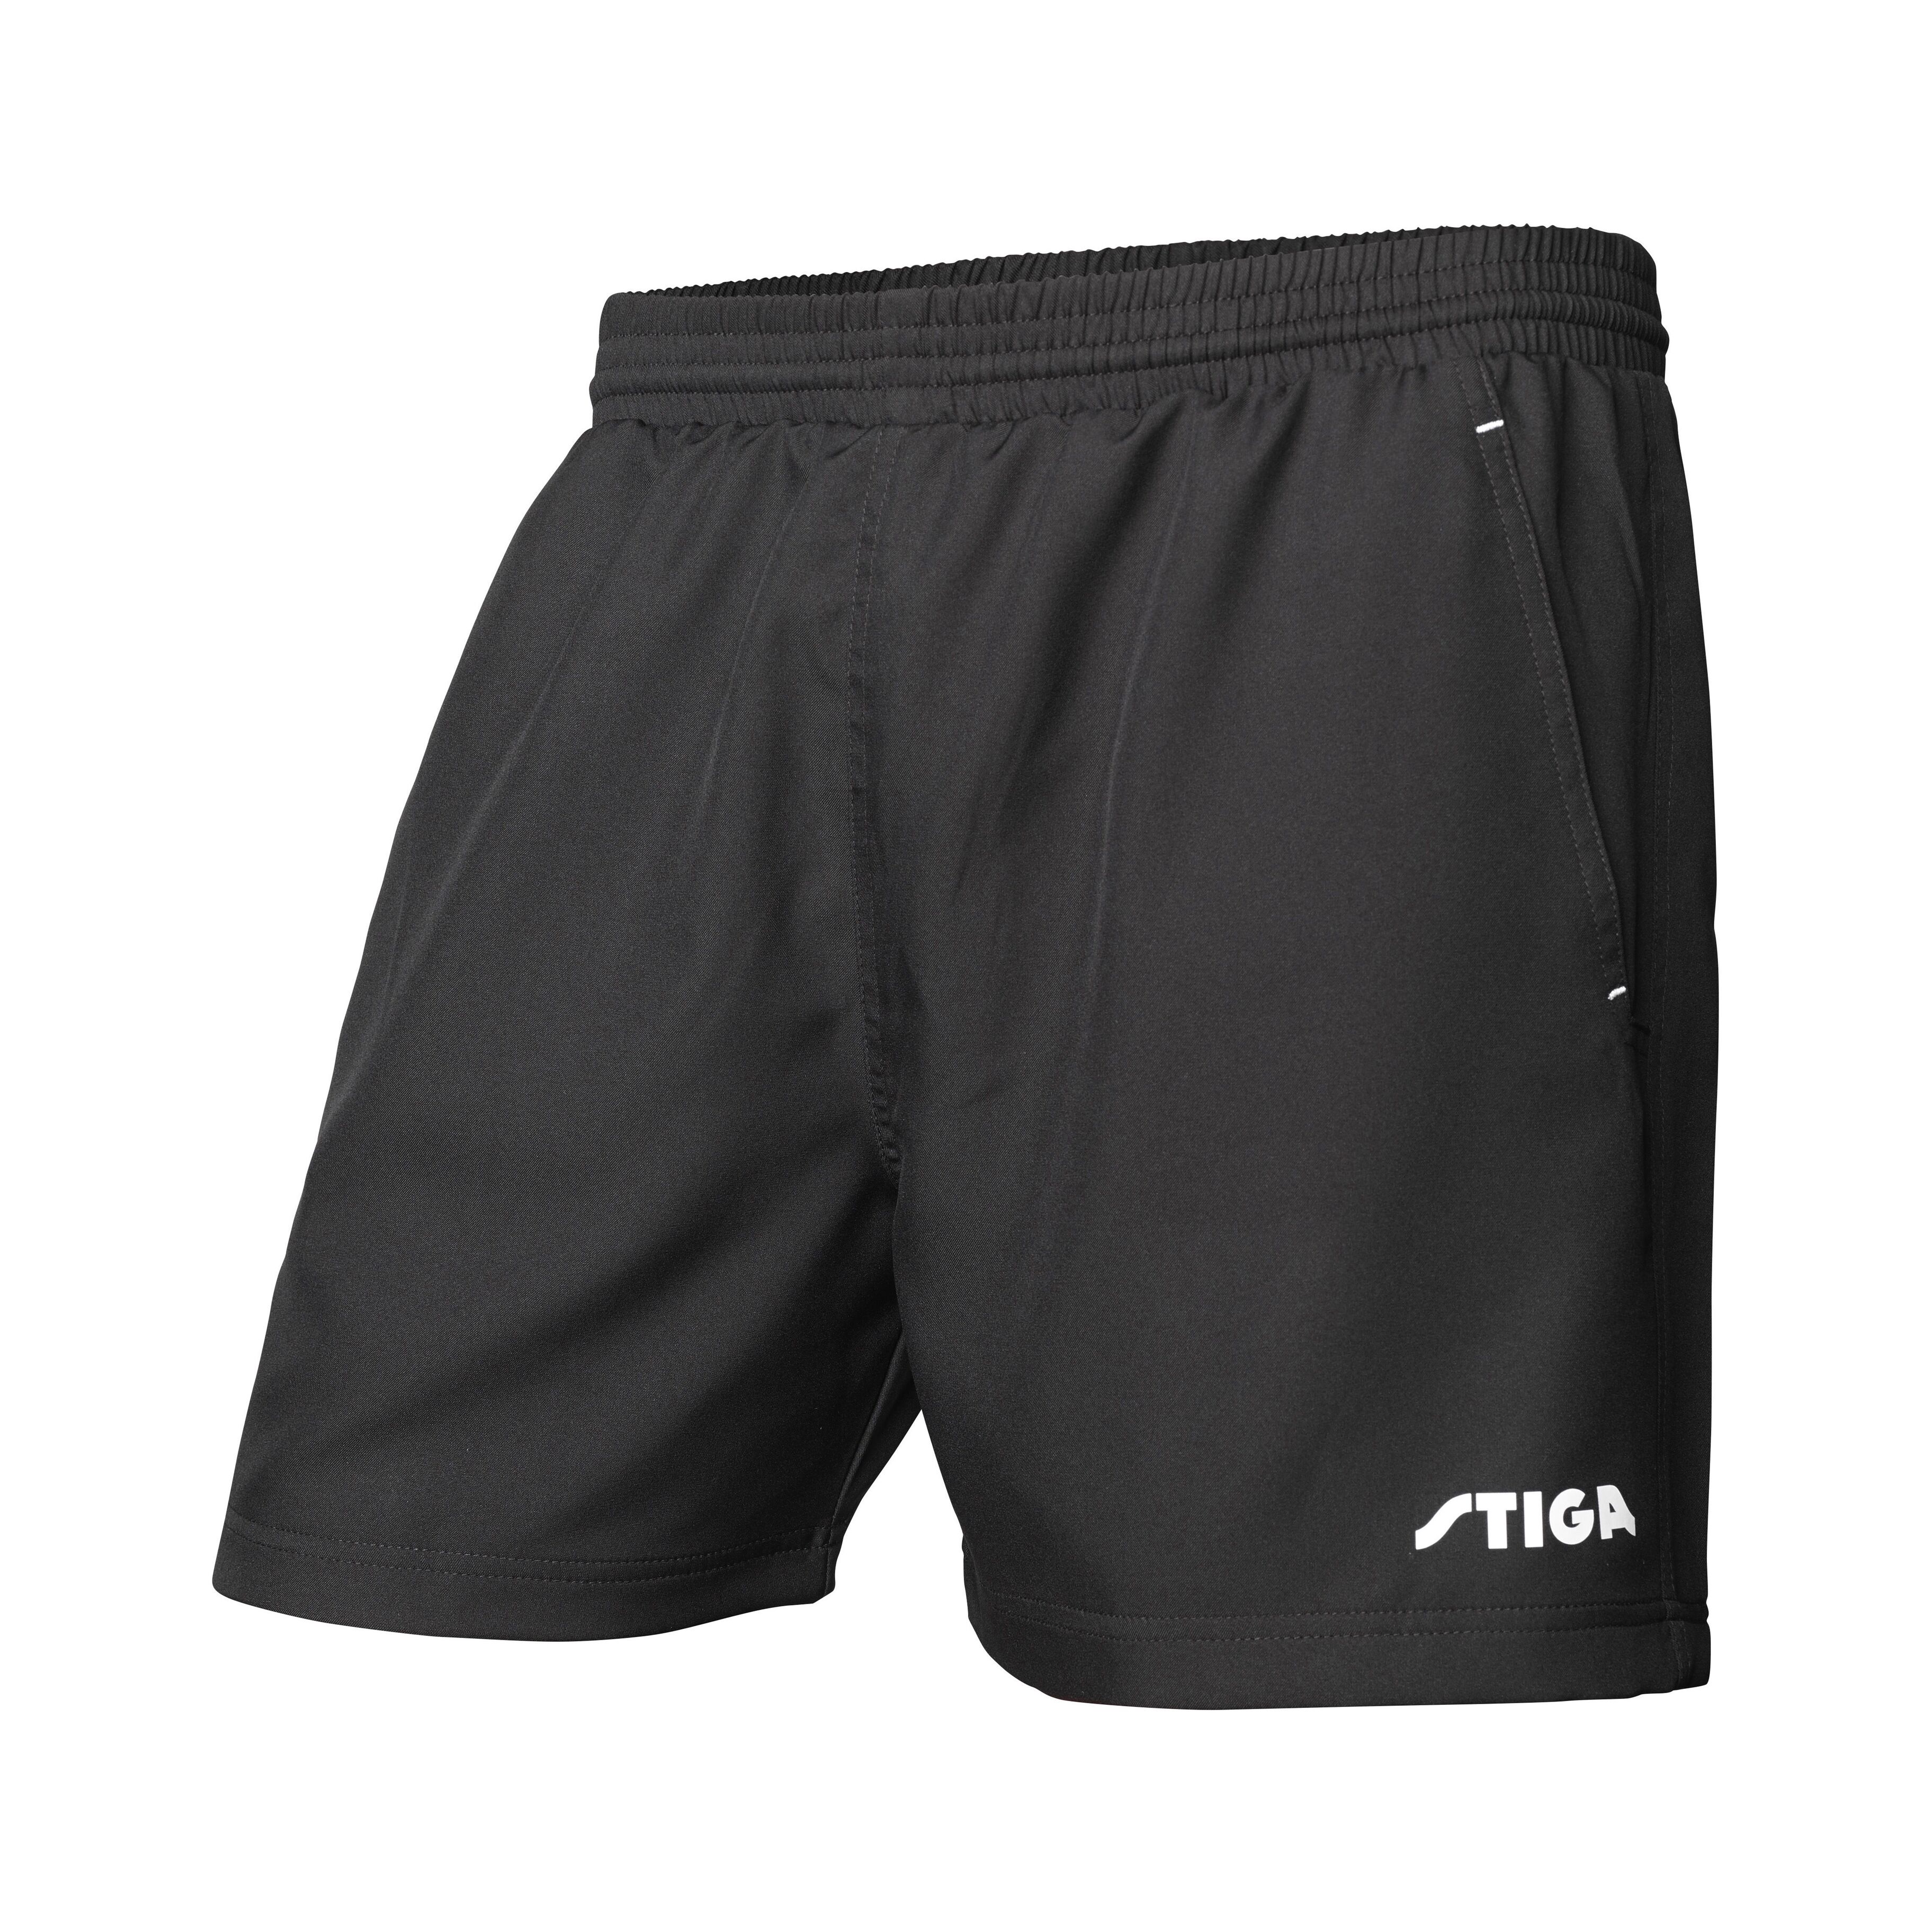 Stiga Marine Black Shorts XL